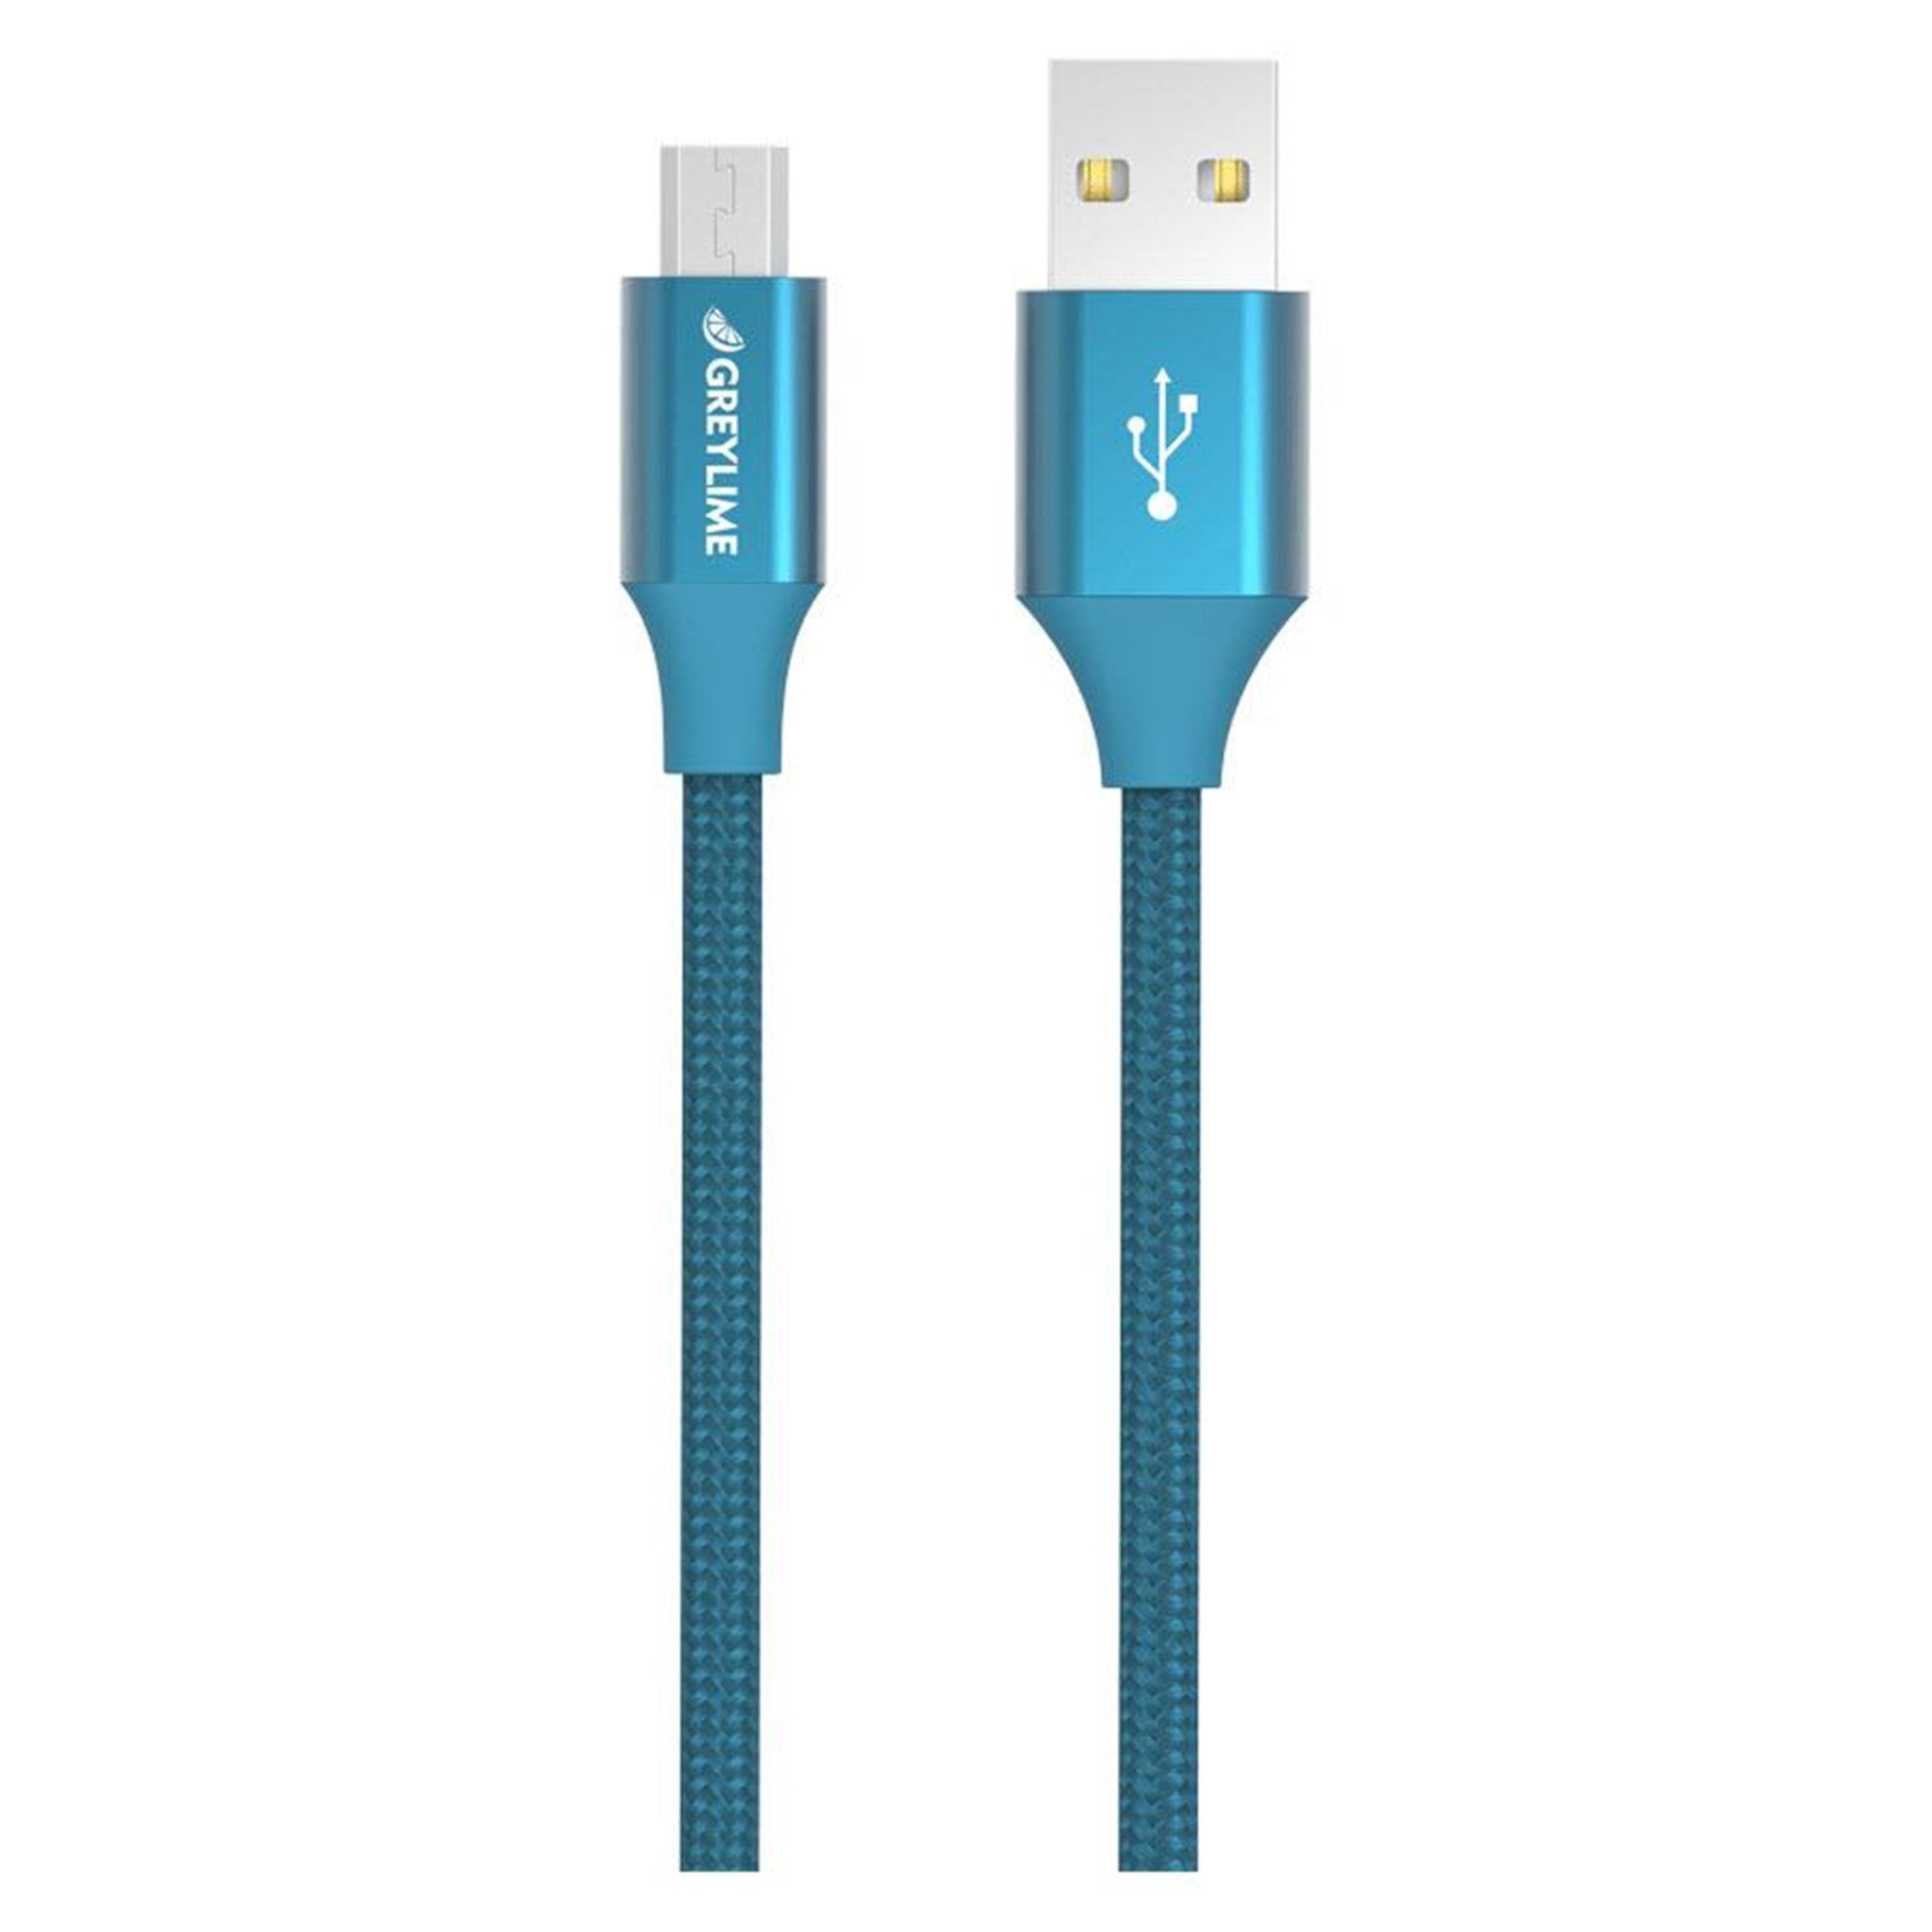 Billede af GreyLime Braided USB-A til Micro USB Kabel Blå 1m hos GreyLime